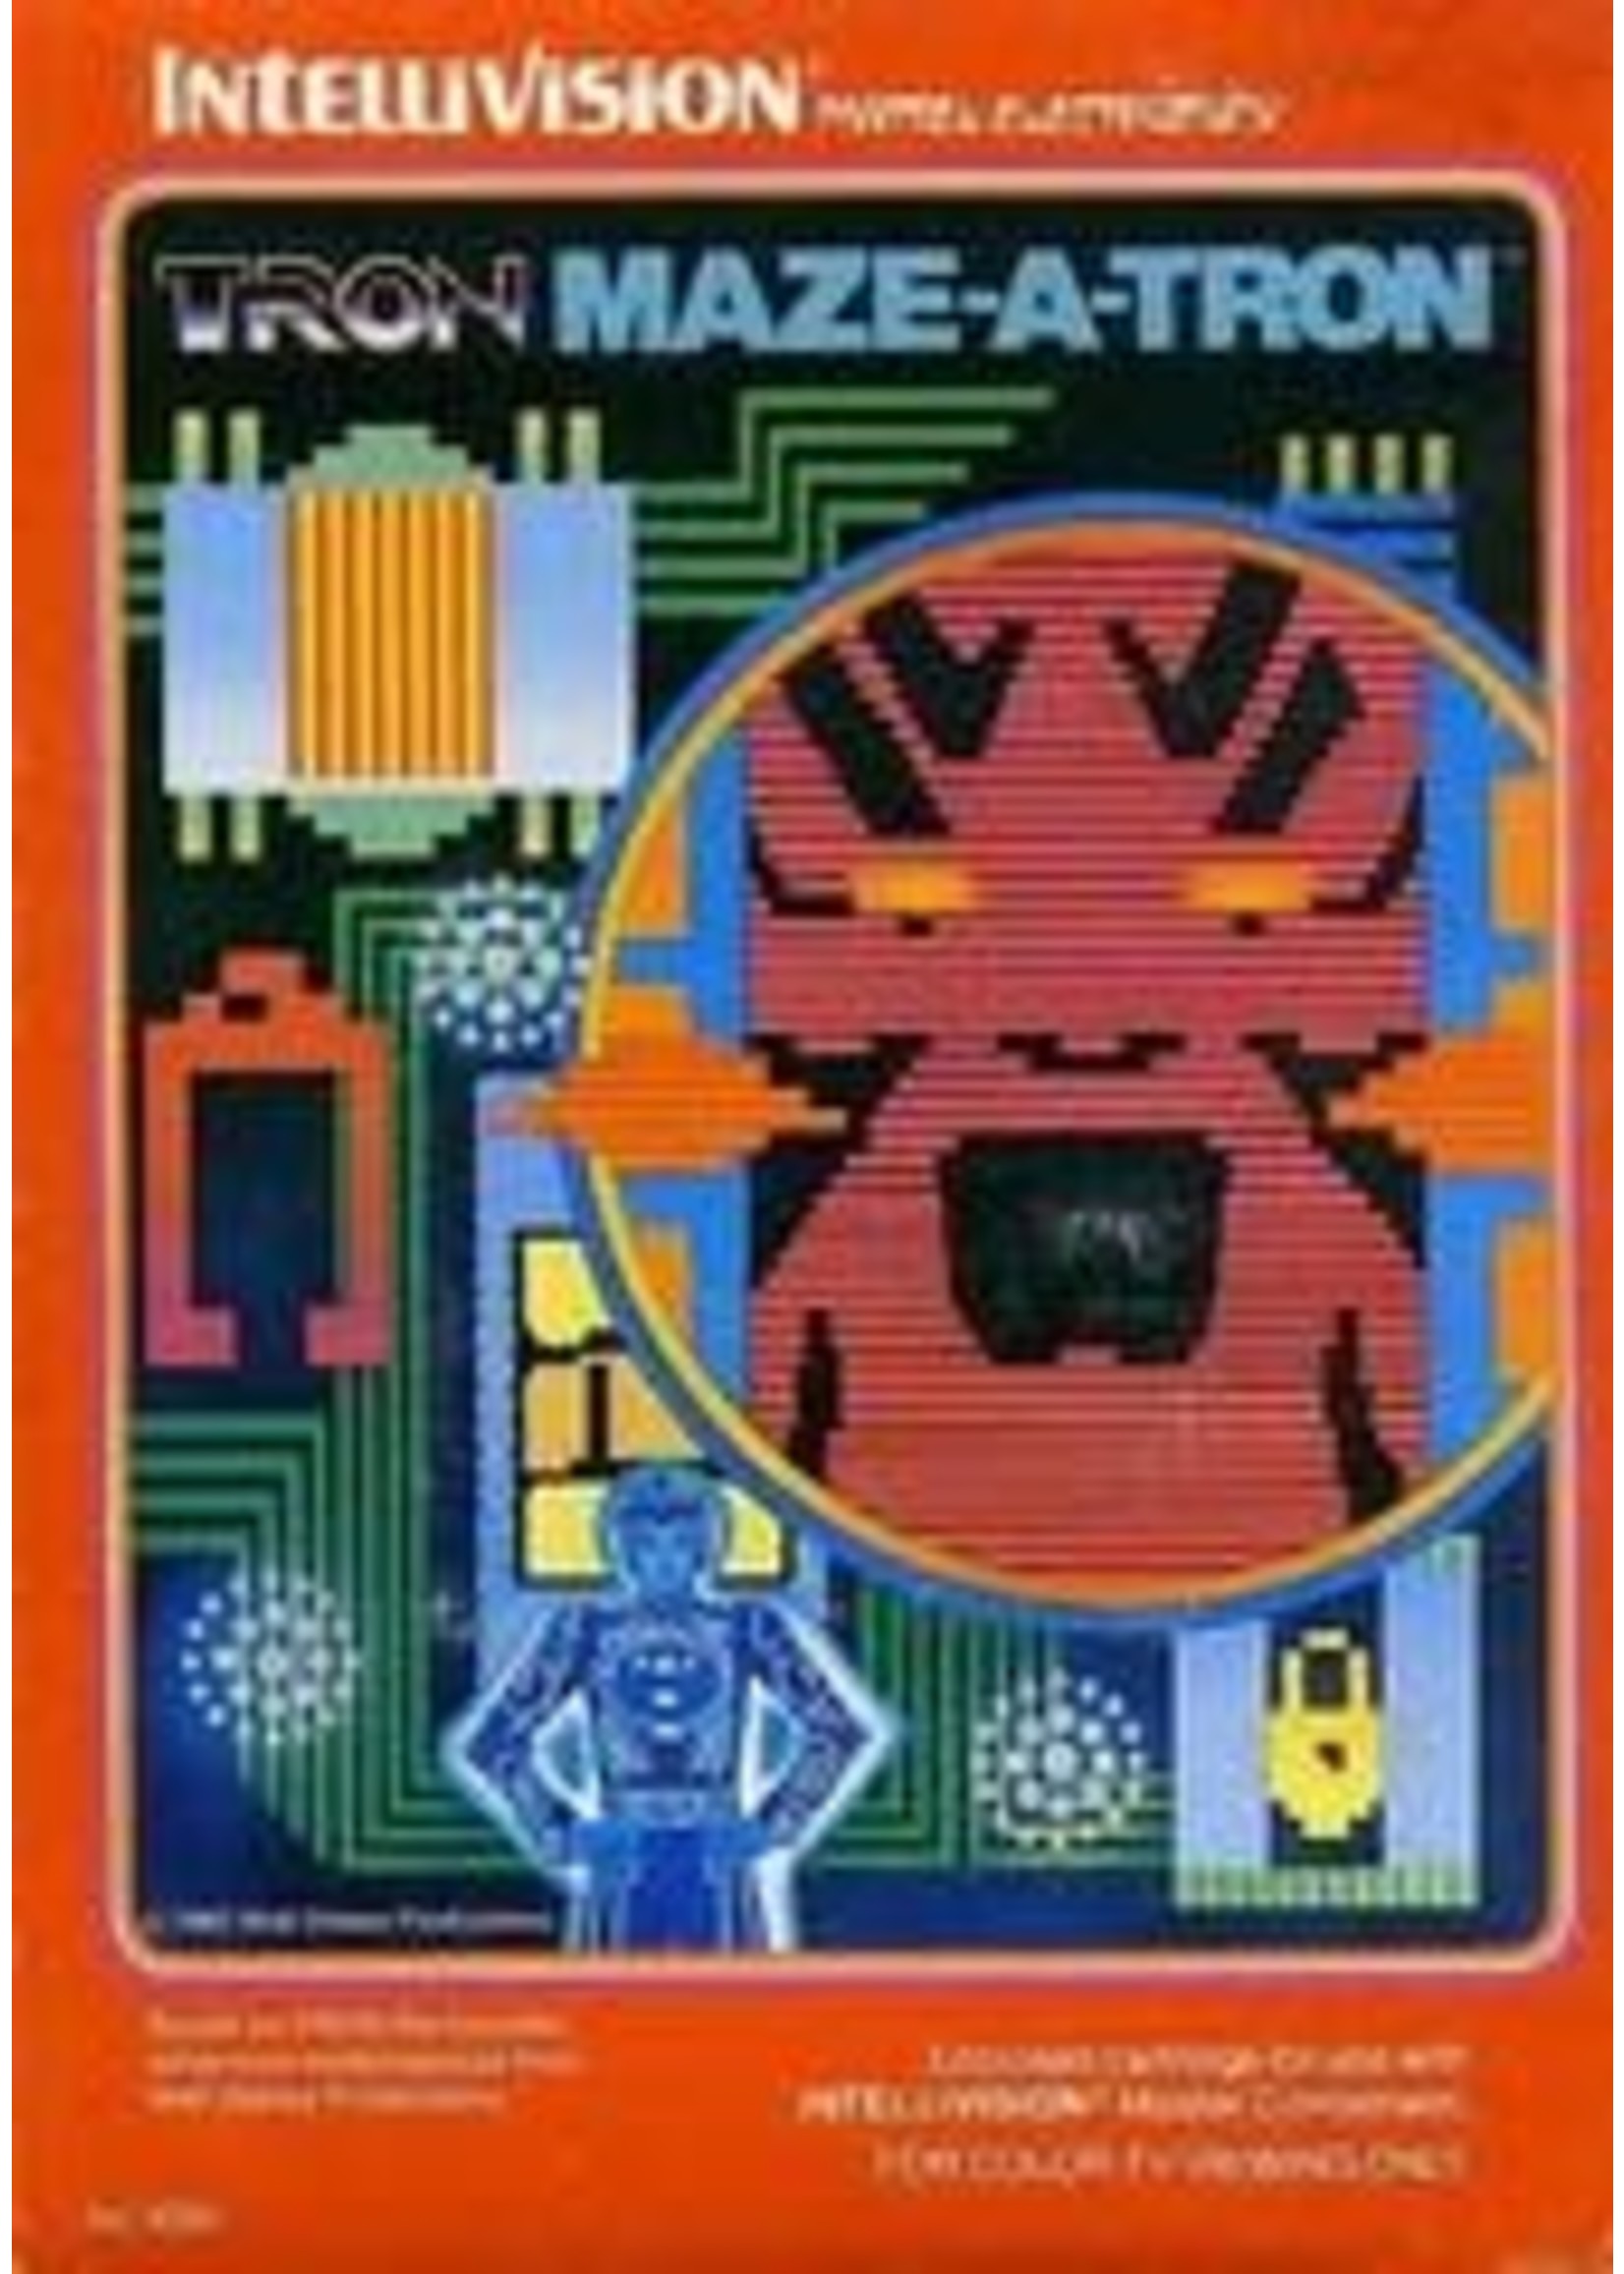 Tron Maze-A-Tron Intellivision